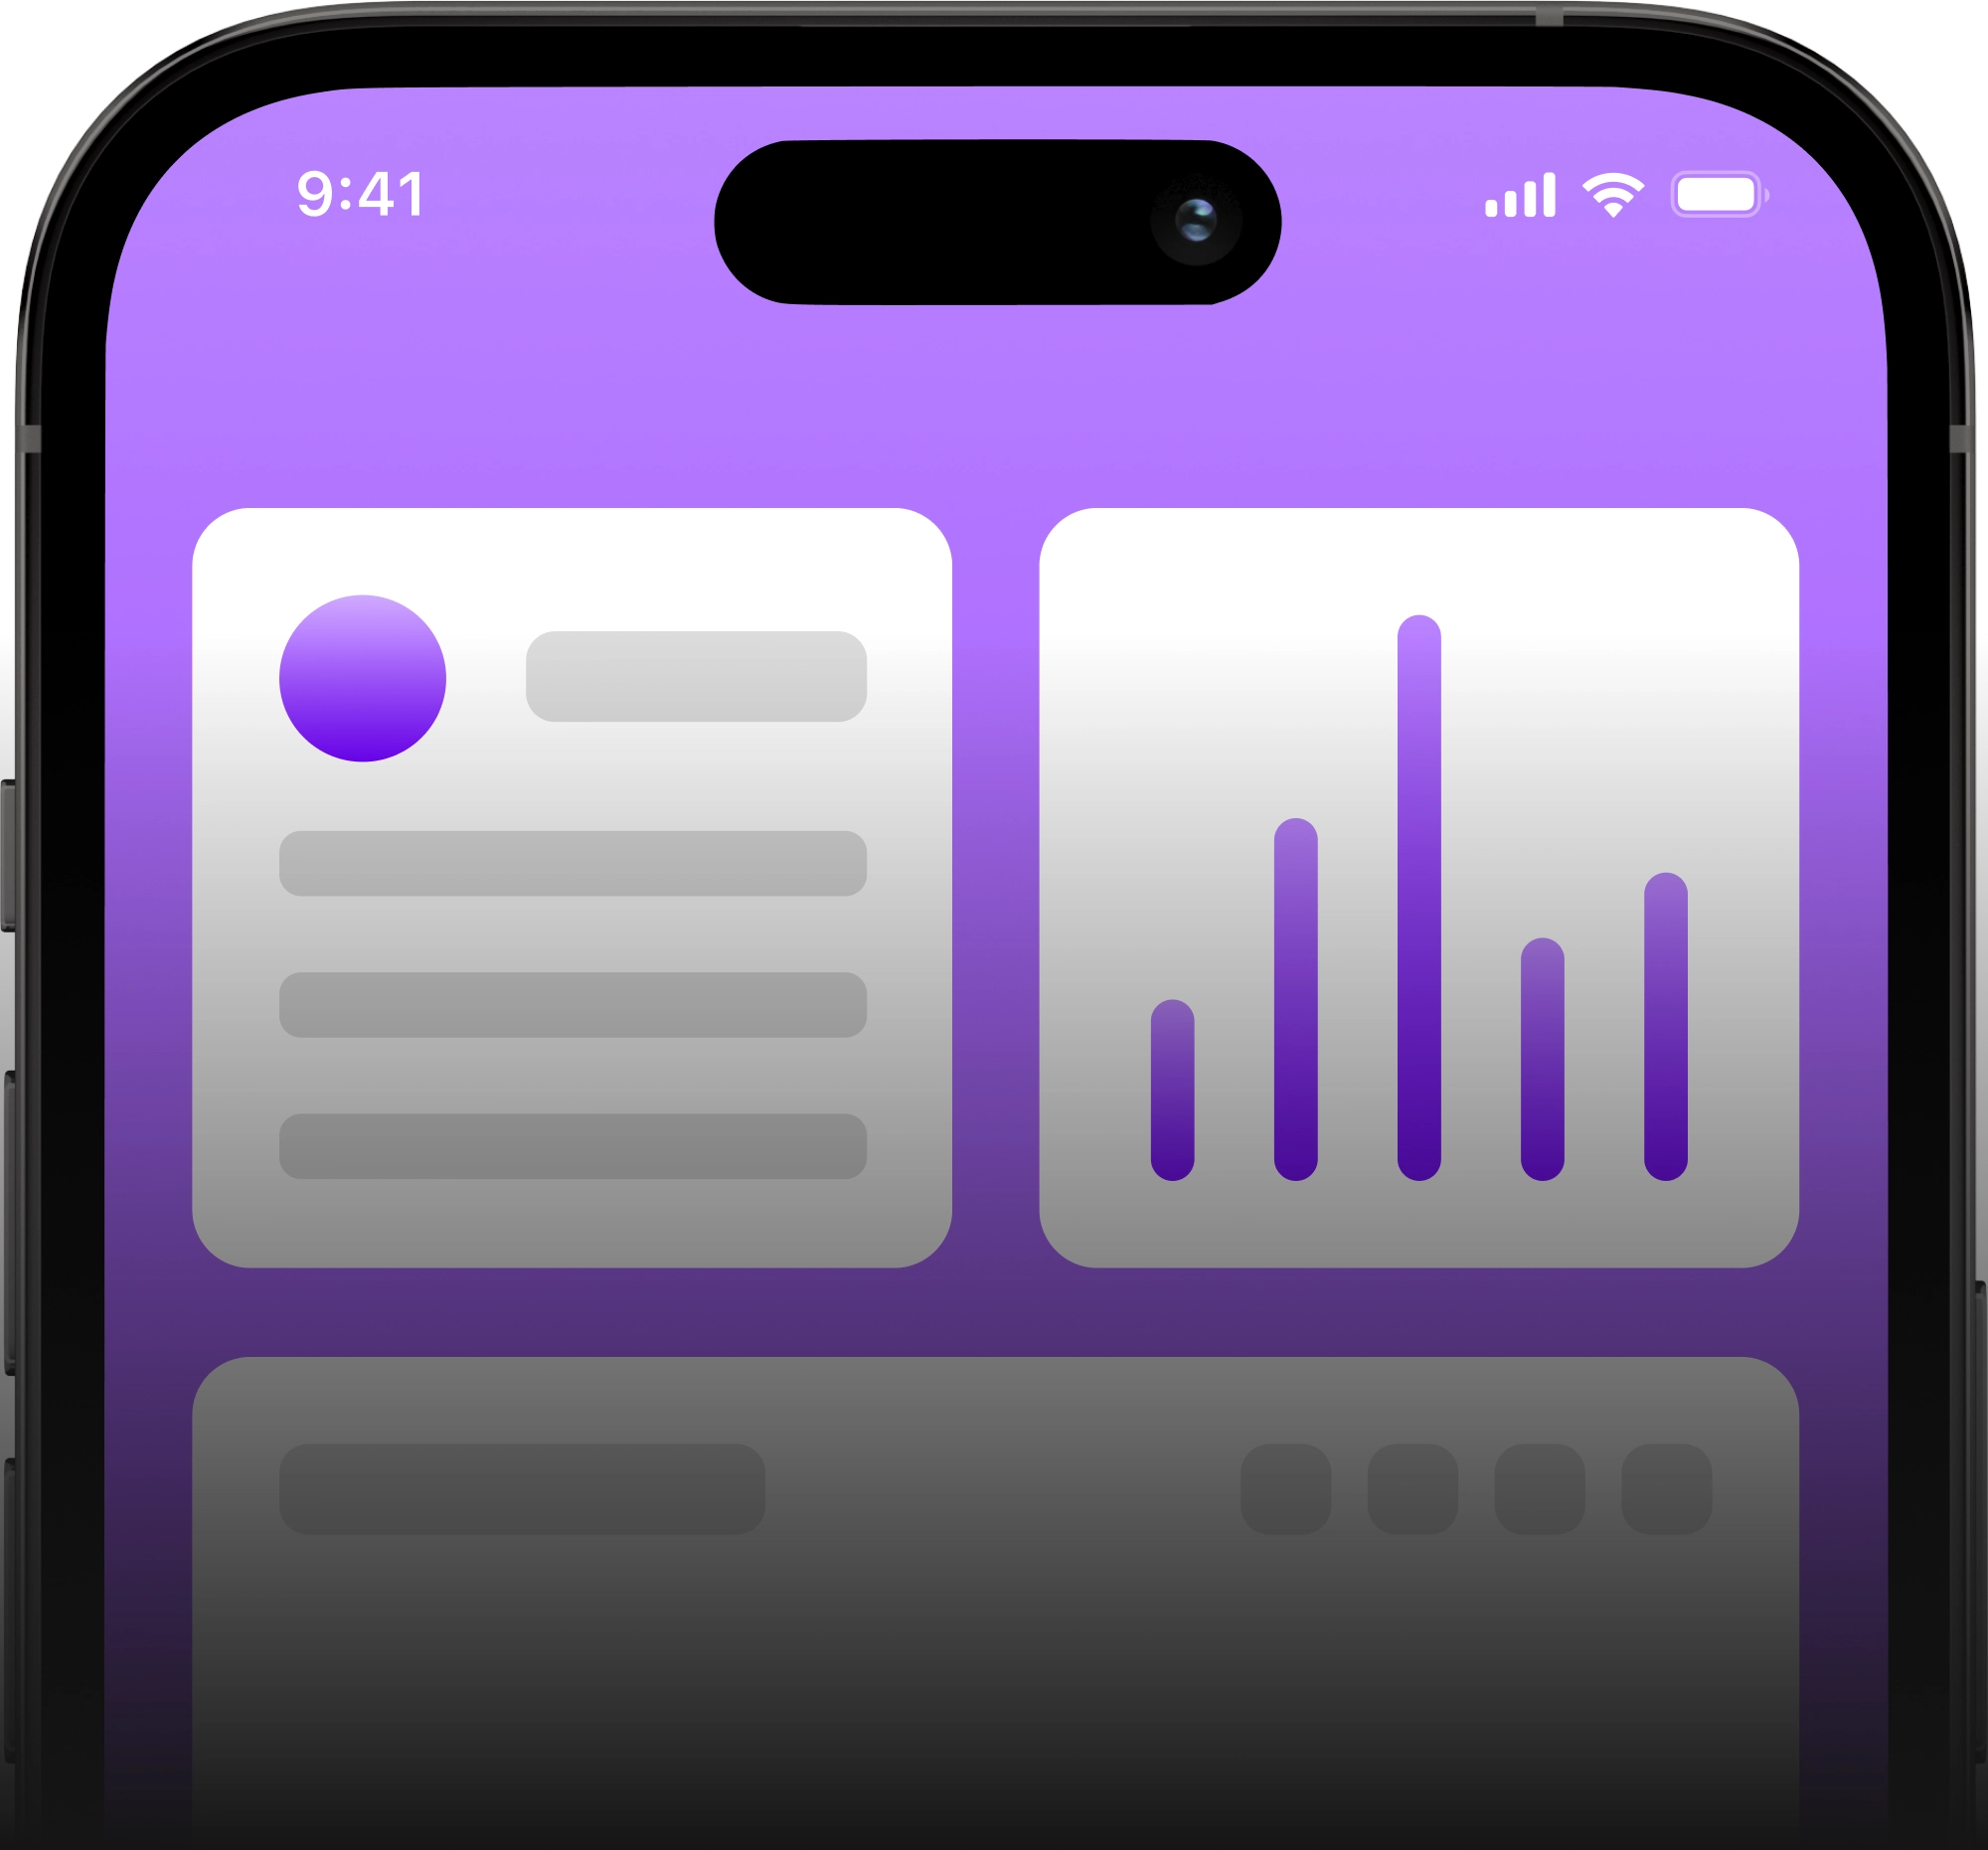 Eine beispielhafte Darstellung einer Mobile App mit lilanem Hintergrund auf einem Smartphone-Bildschirm, der zur Hälfte sichtbar ist, vor transparentem Hintergrund.